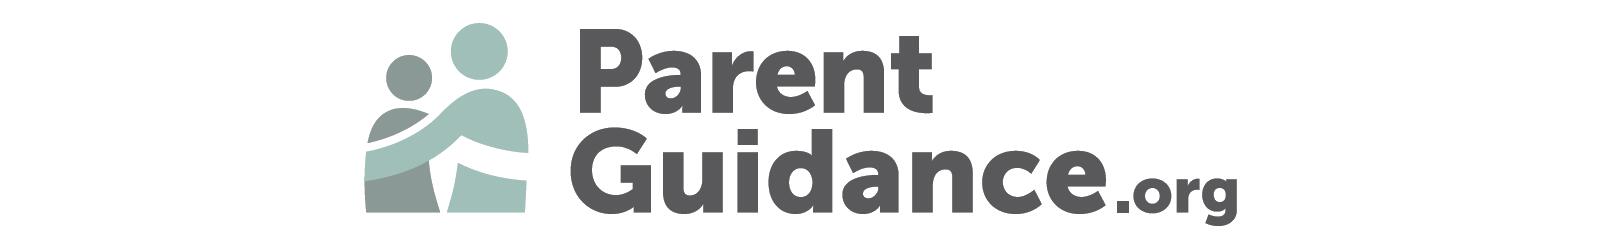 Parent Guidance website link